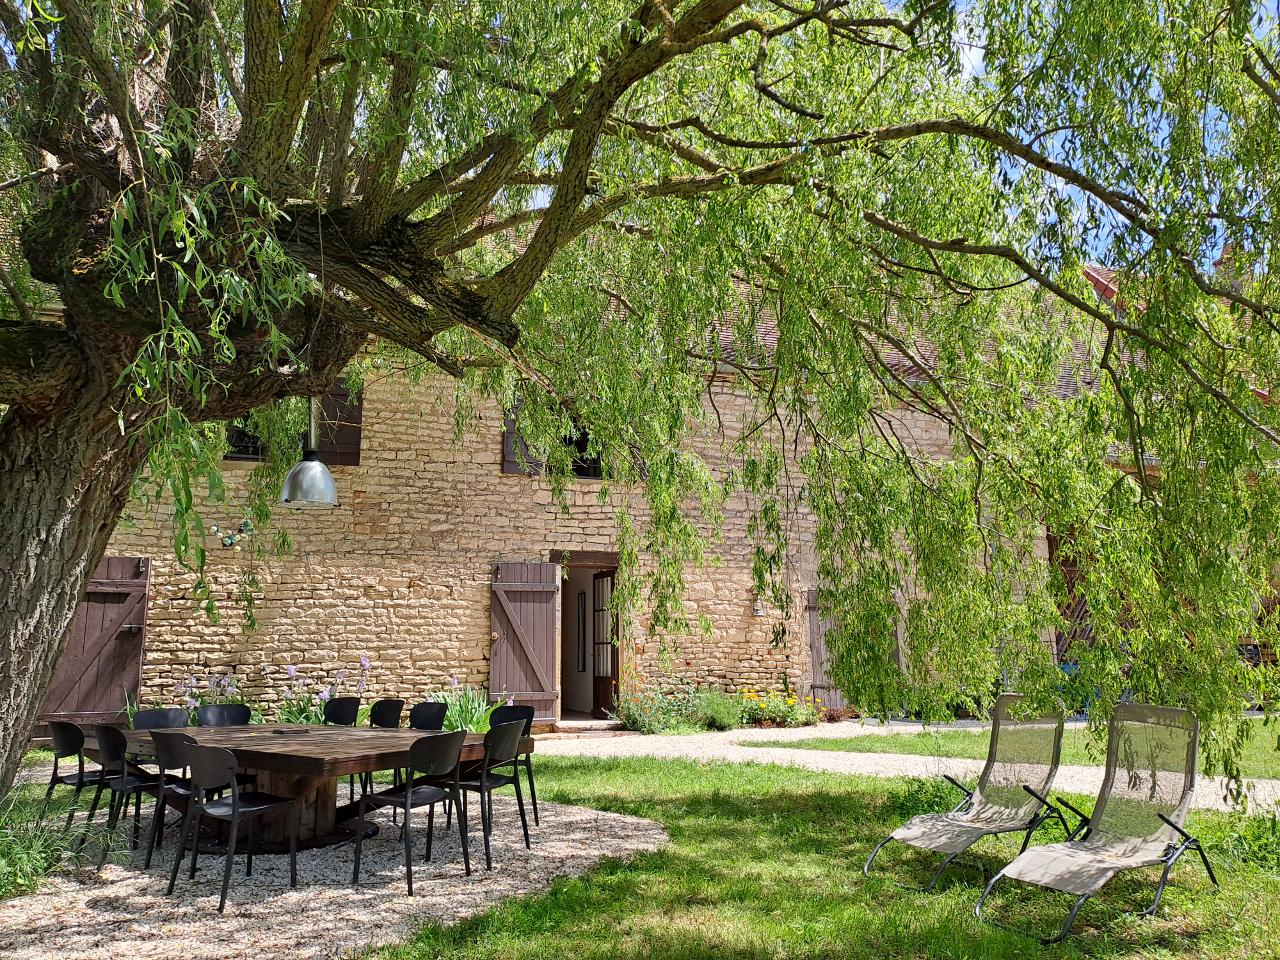 Hôte GreenGo: Gîte de campagne "La Chavoche" situé en lisière de bois et à proximité d’une rivière - Bourgogne - Image 39